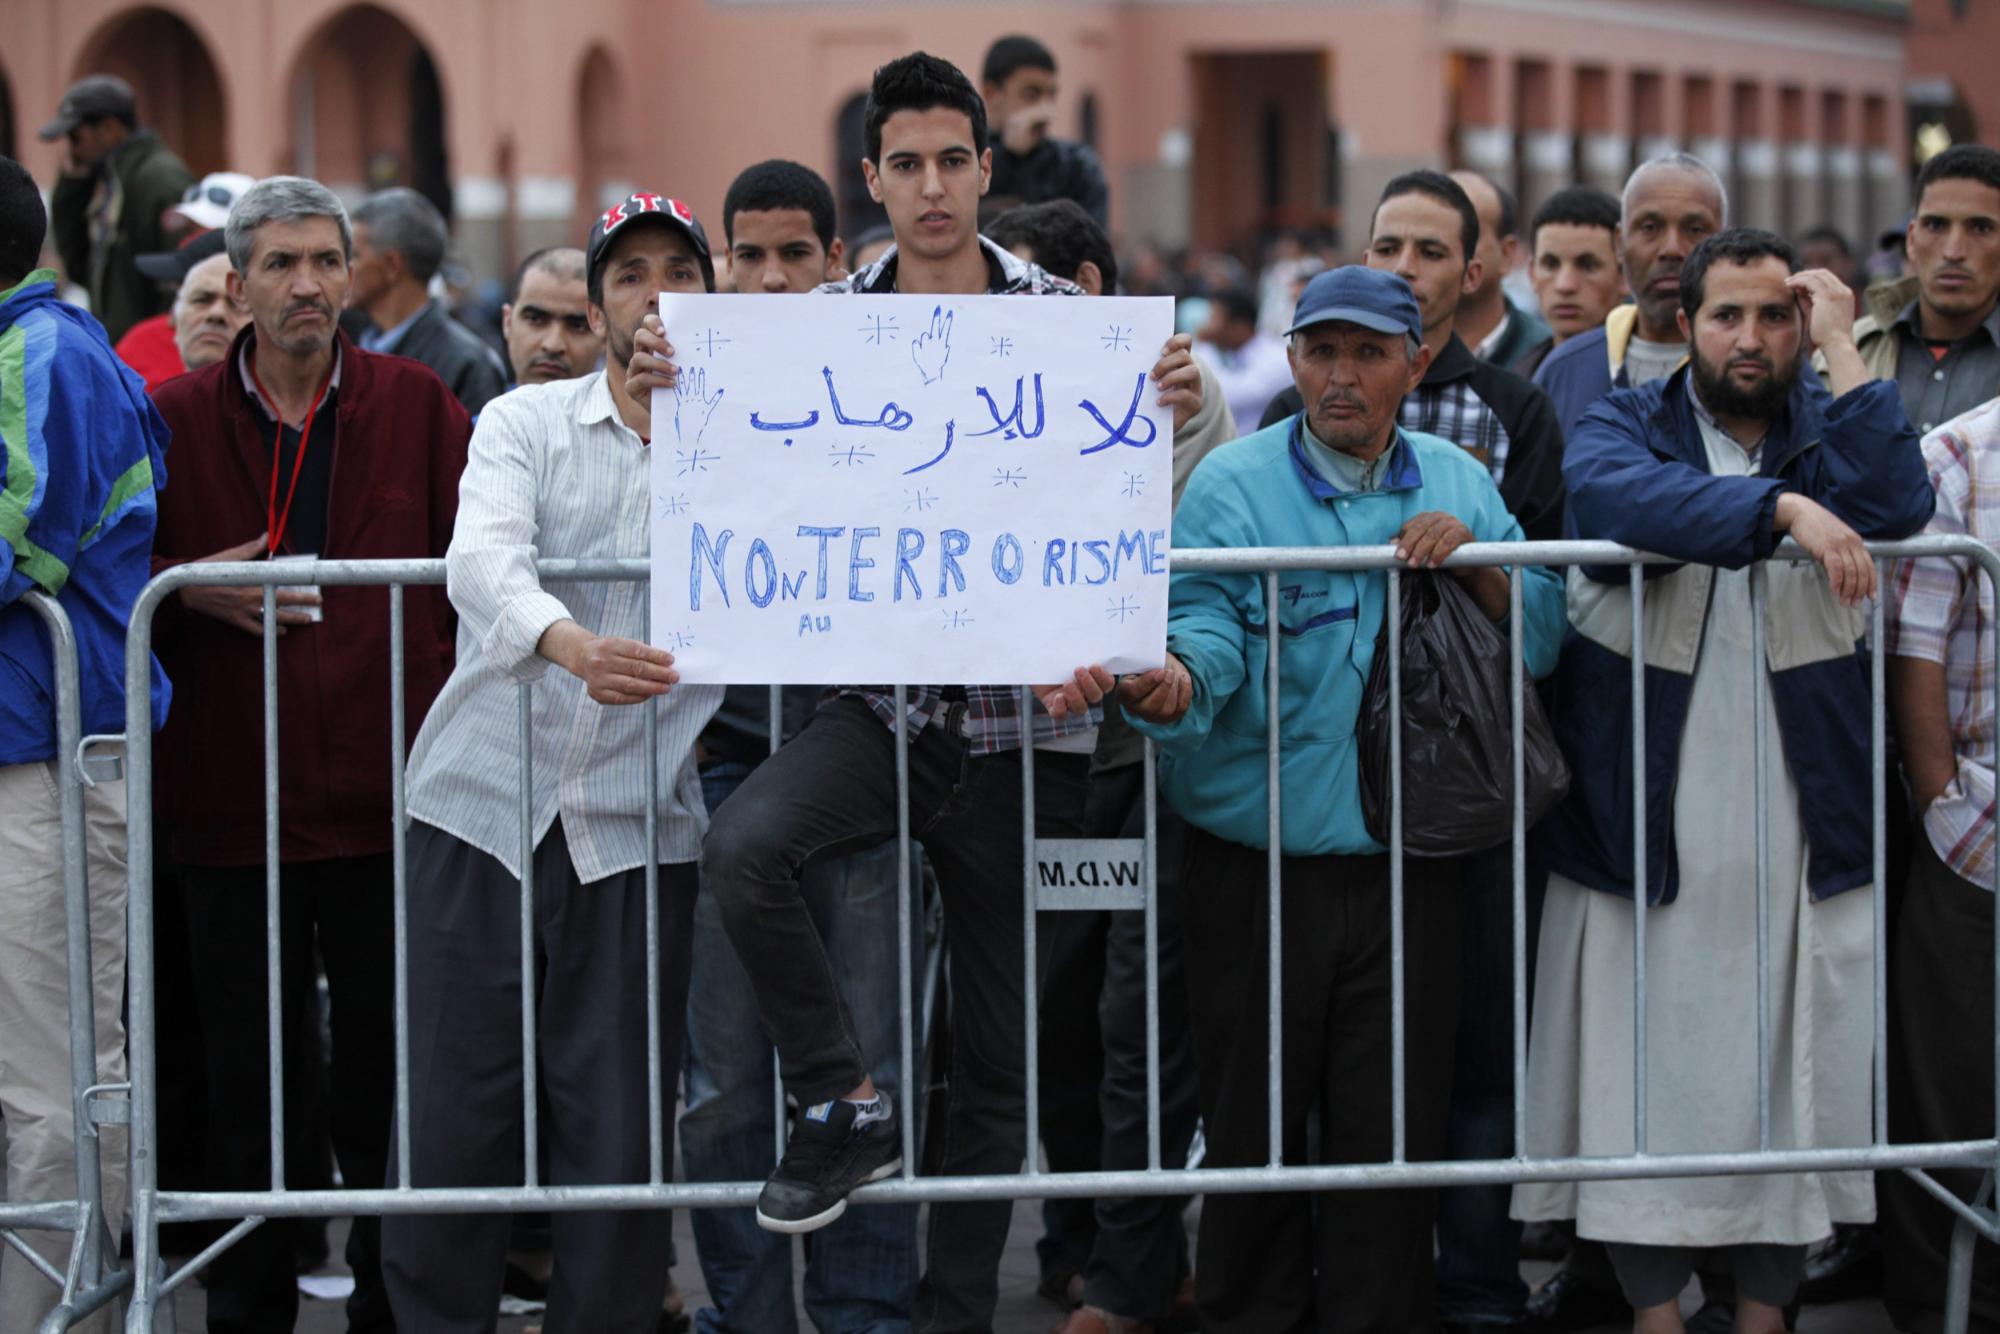 摩洛哥发生恐怖袭击致30多人死伤 死亡者外国人居多